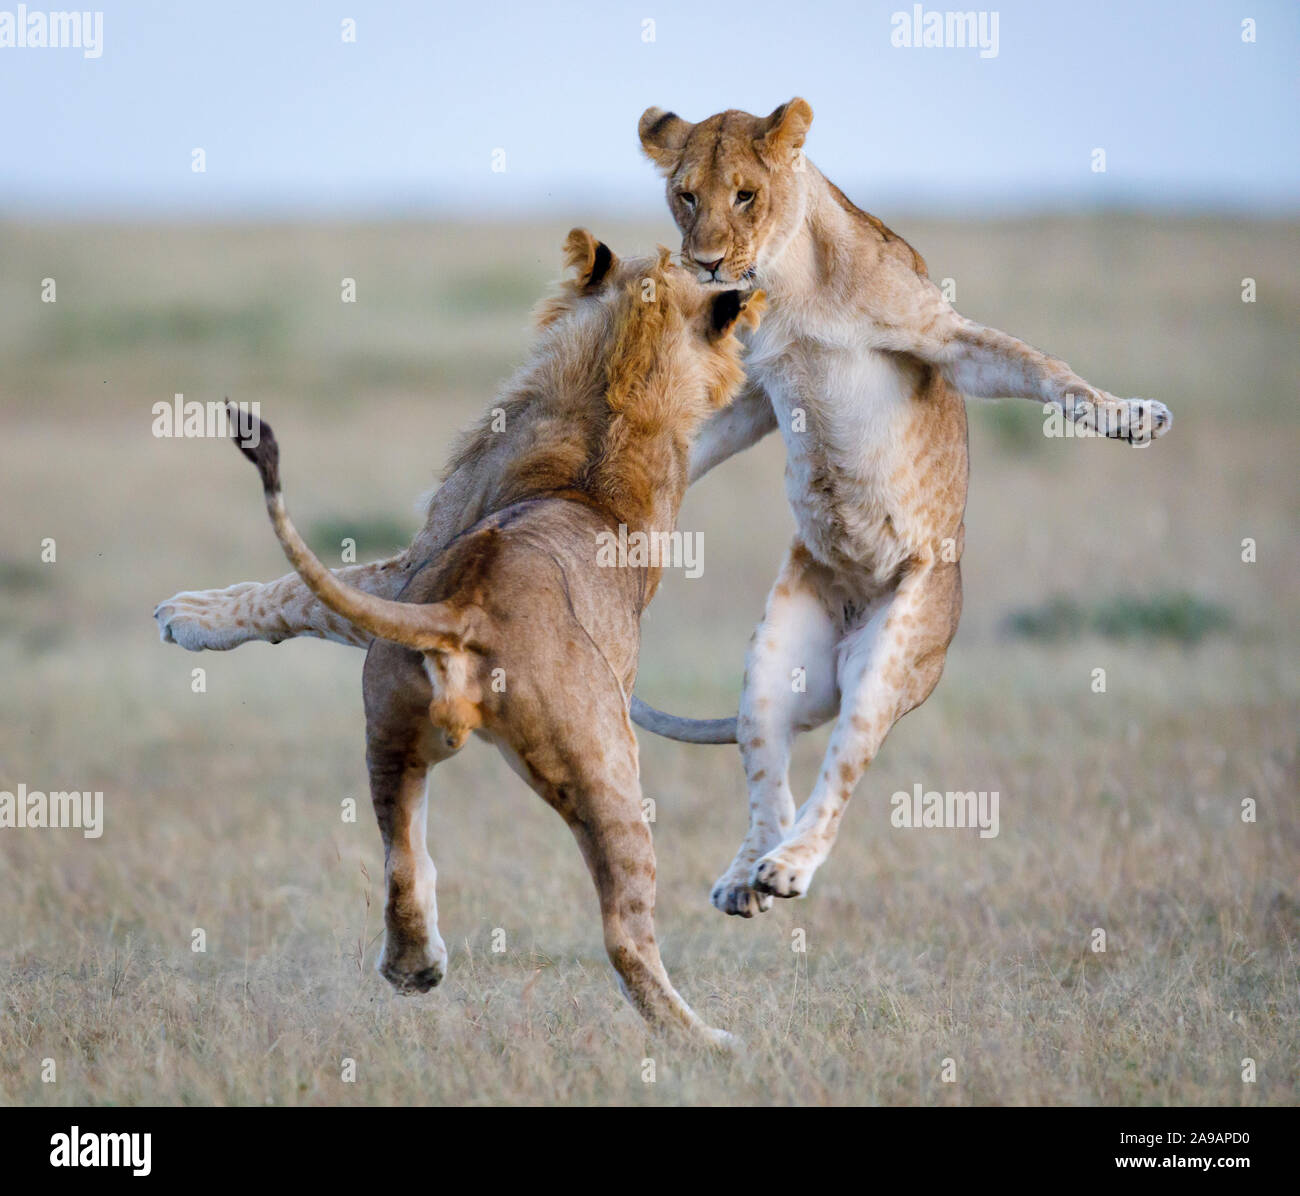 África: Dos leones adolescentes showoff su matriz-style se mueve. Bailando hasta el afrobeat! Las fotos muestran una notable variedad de animales africanos muleta Foto de stock